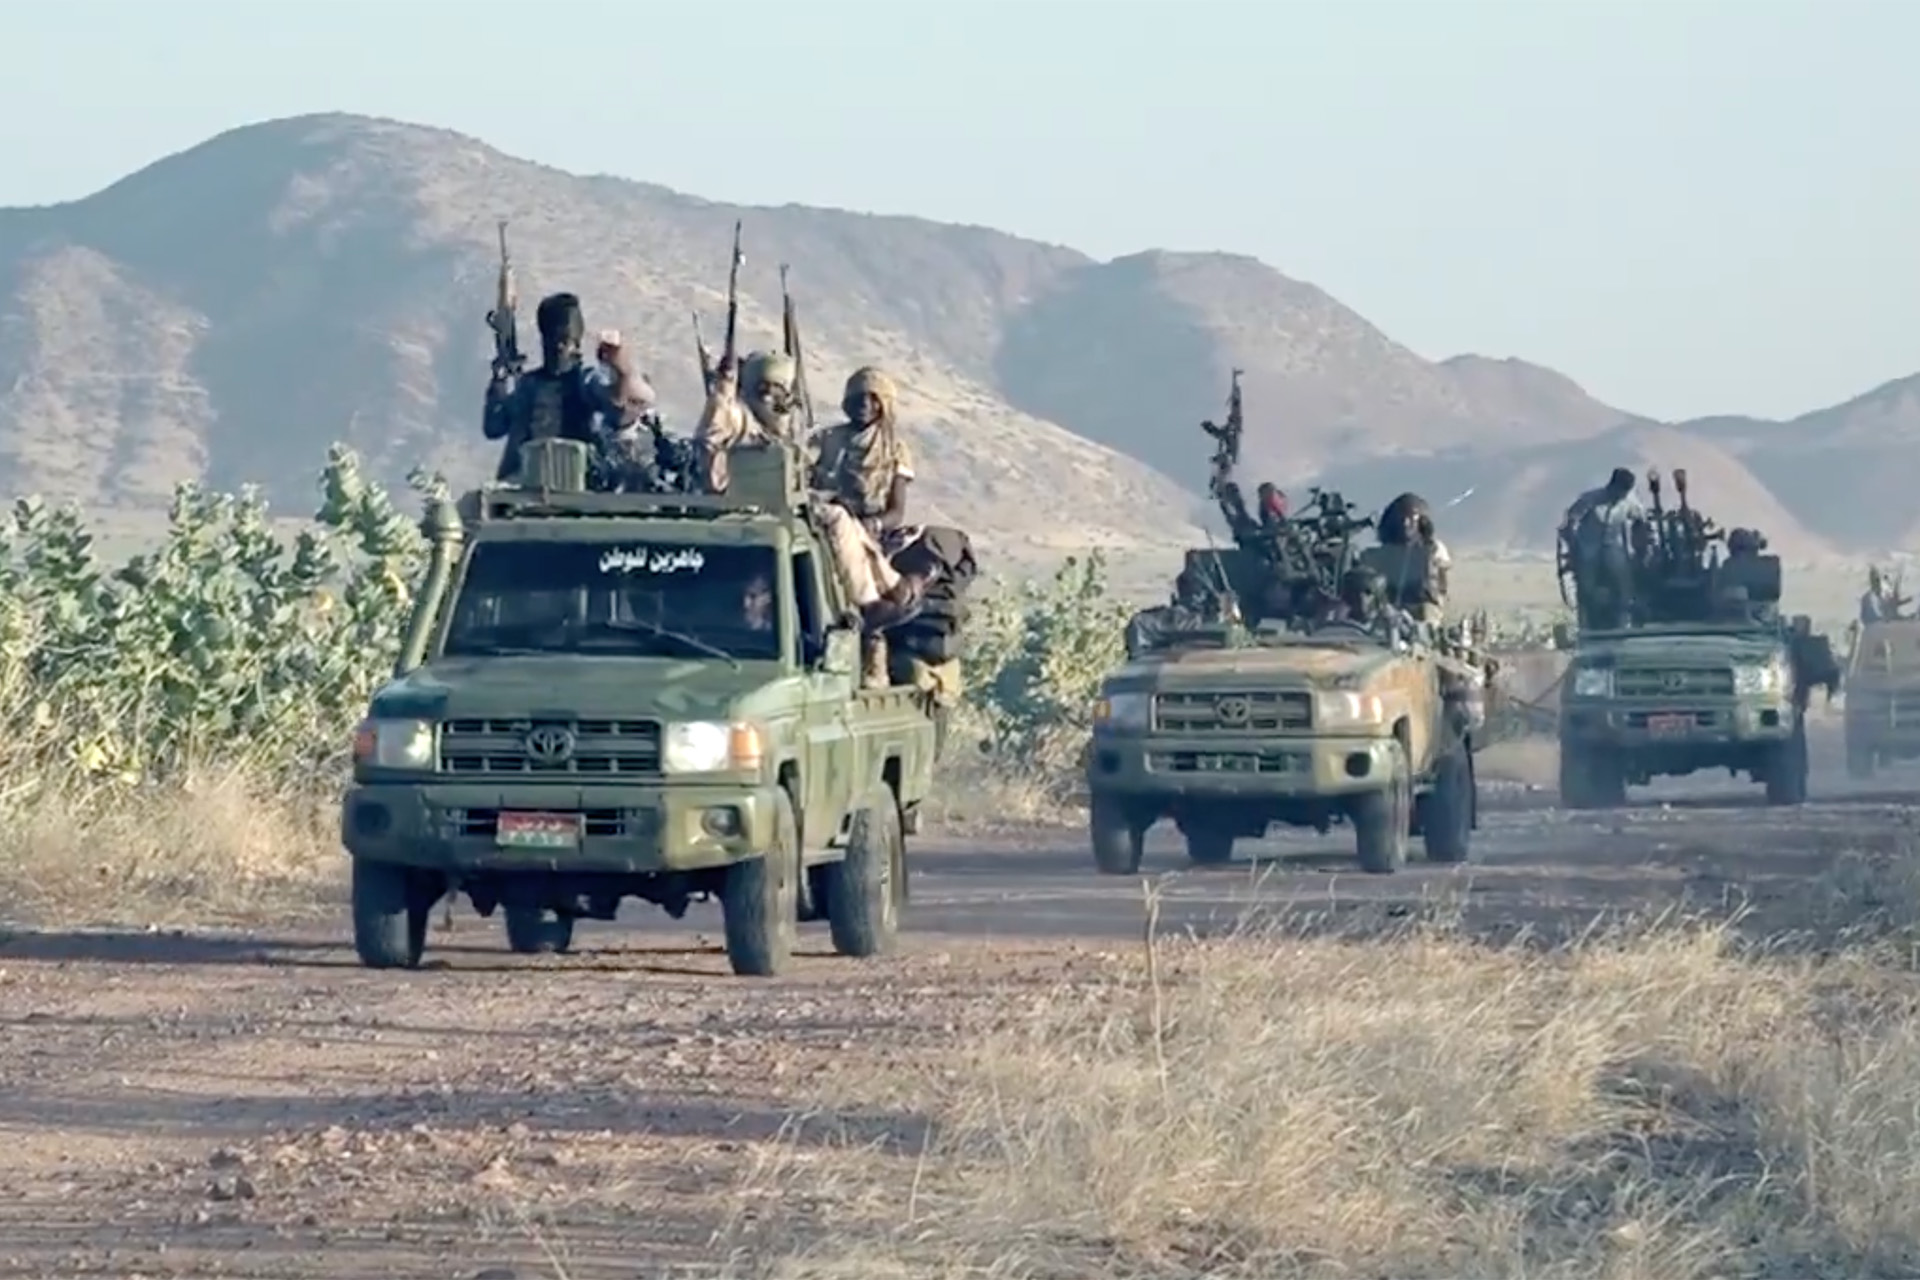 100 قتيل وسط السودان.. الجيش يتهم والدعم السريع يبرر | أخبار – البوكس نيوز